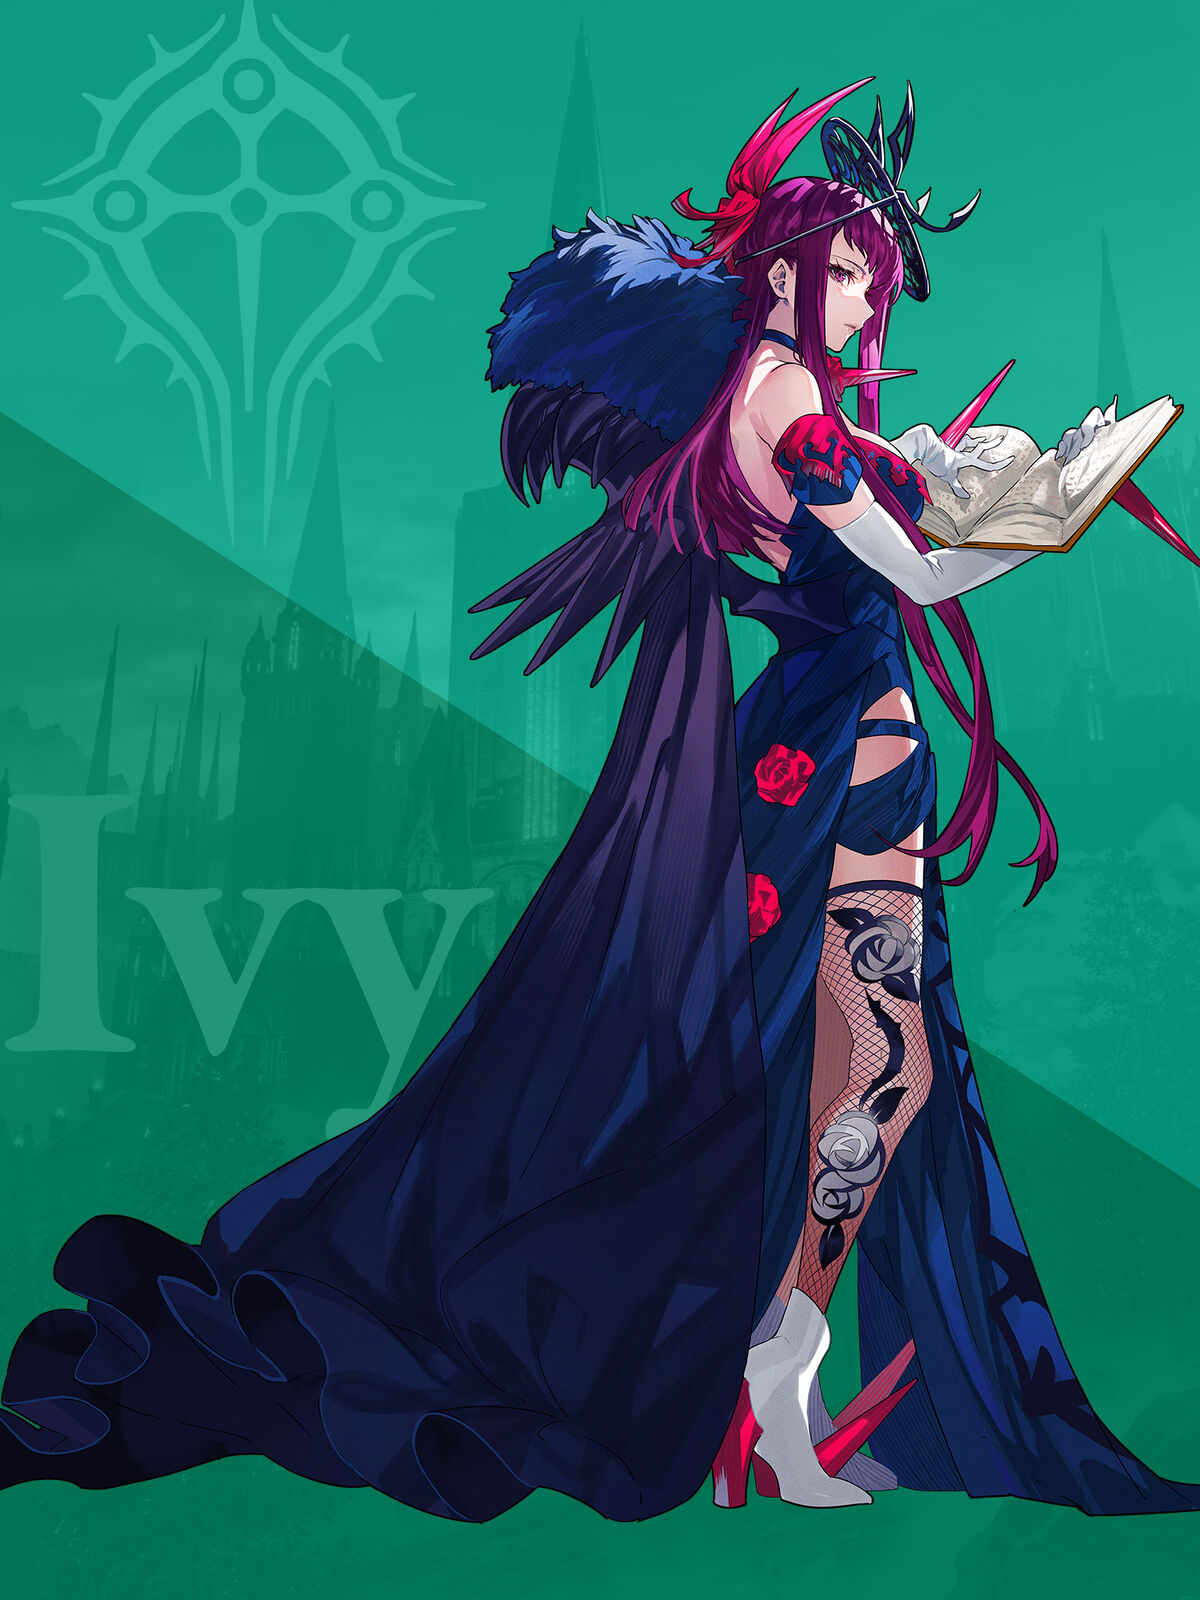 Ivy Fire Emblem Wiki